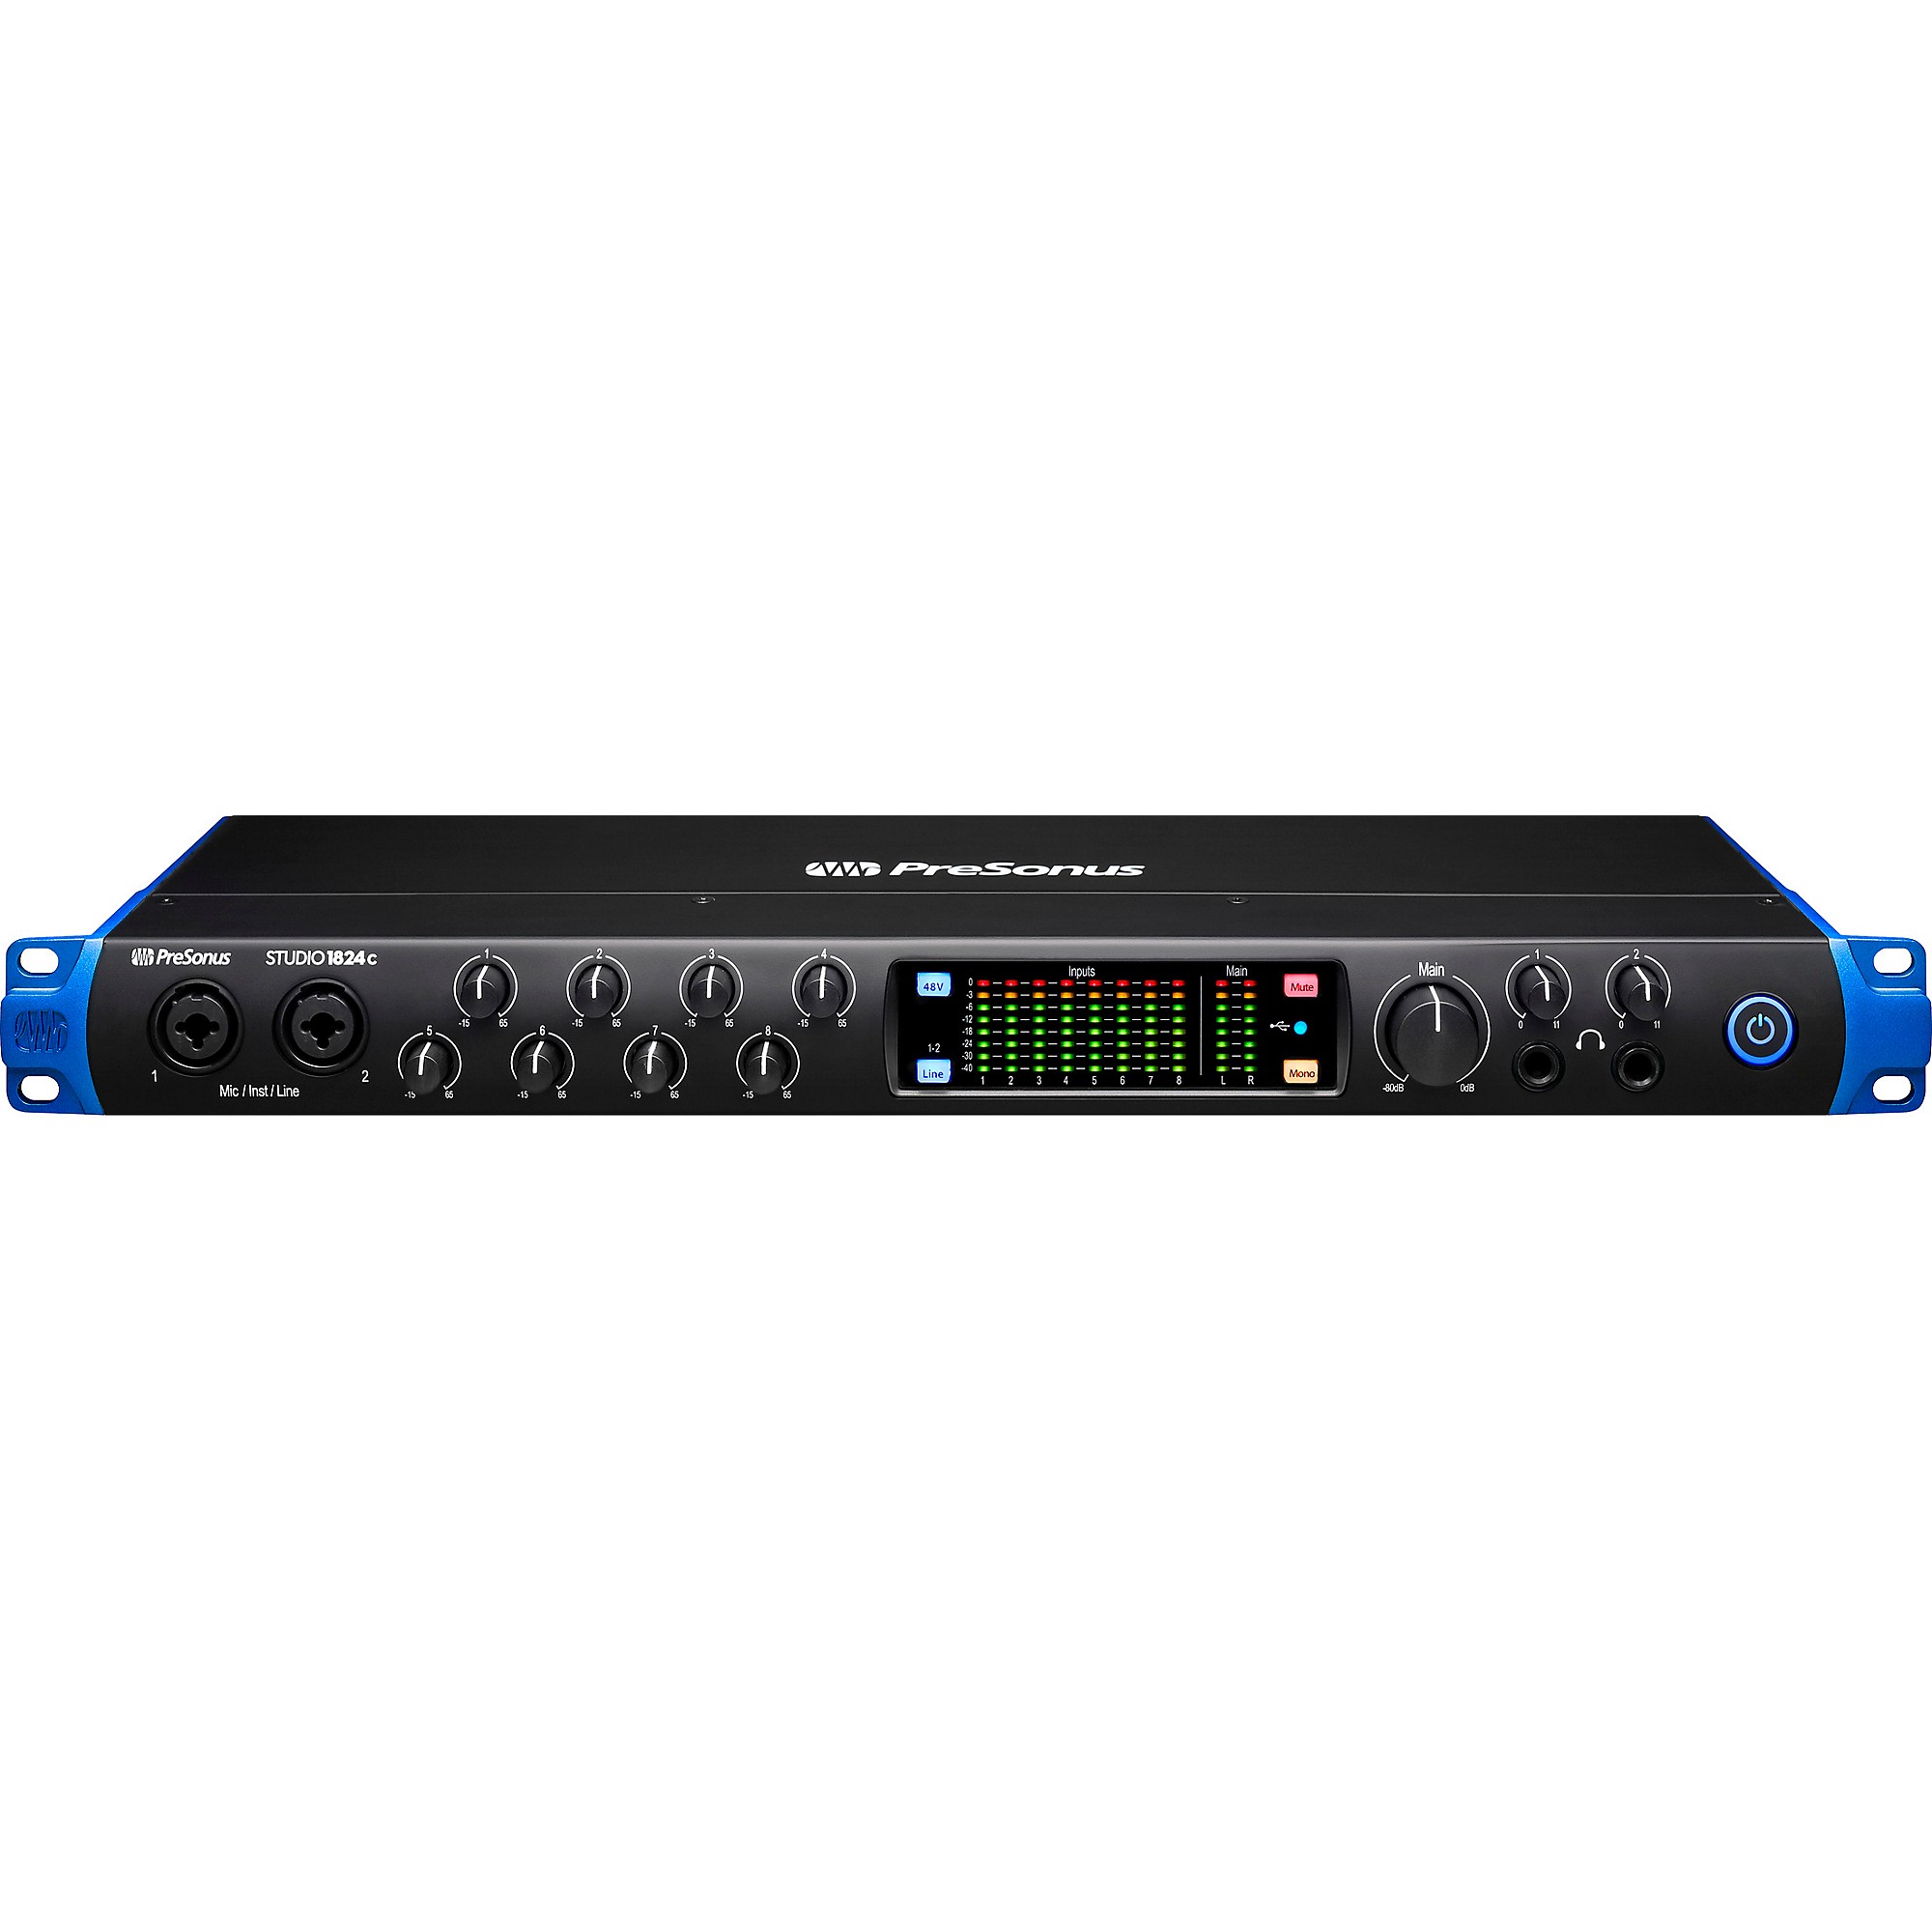 PreSonus Studio 1824c USB-C 18x18 Audio/MIDI Interface | Guitar Center